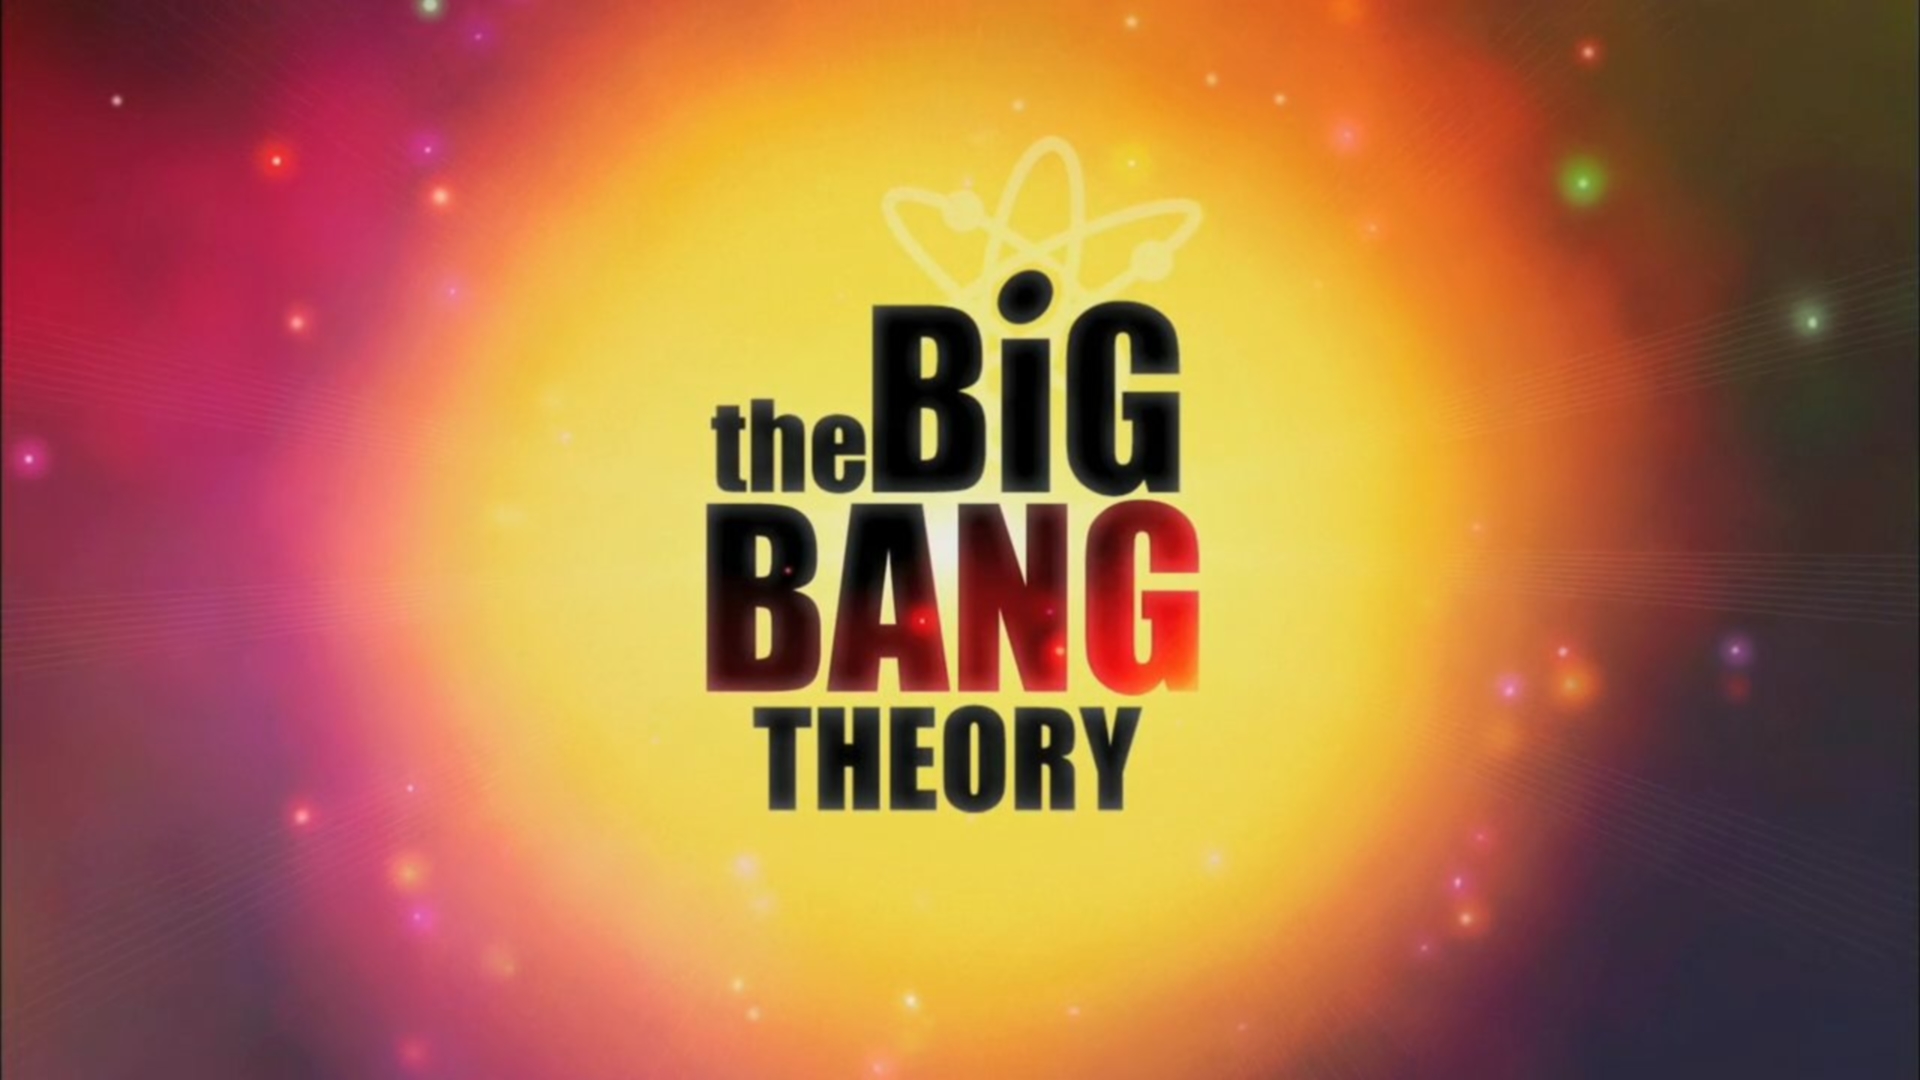 Big Bang Theory HD Wallpaper I Have A Pc